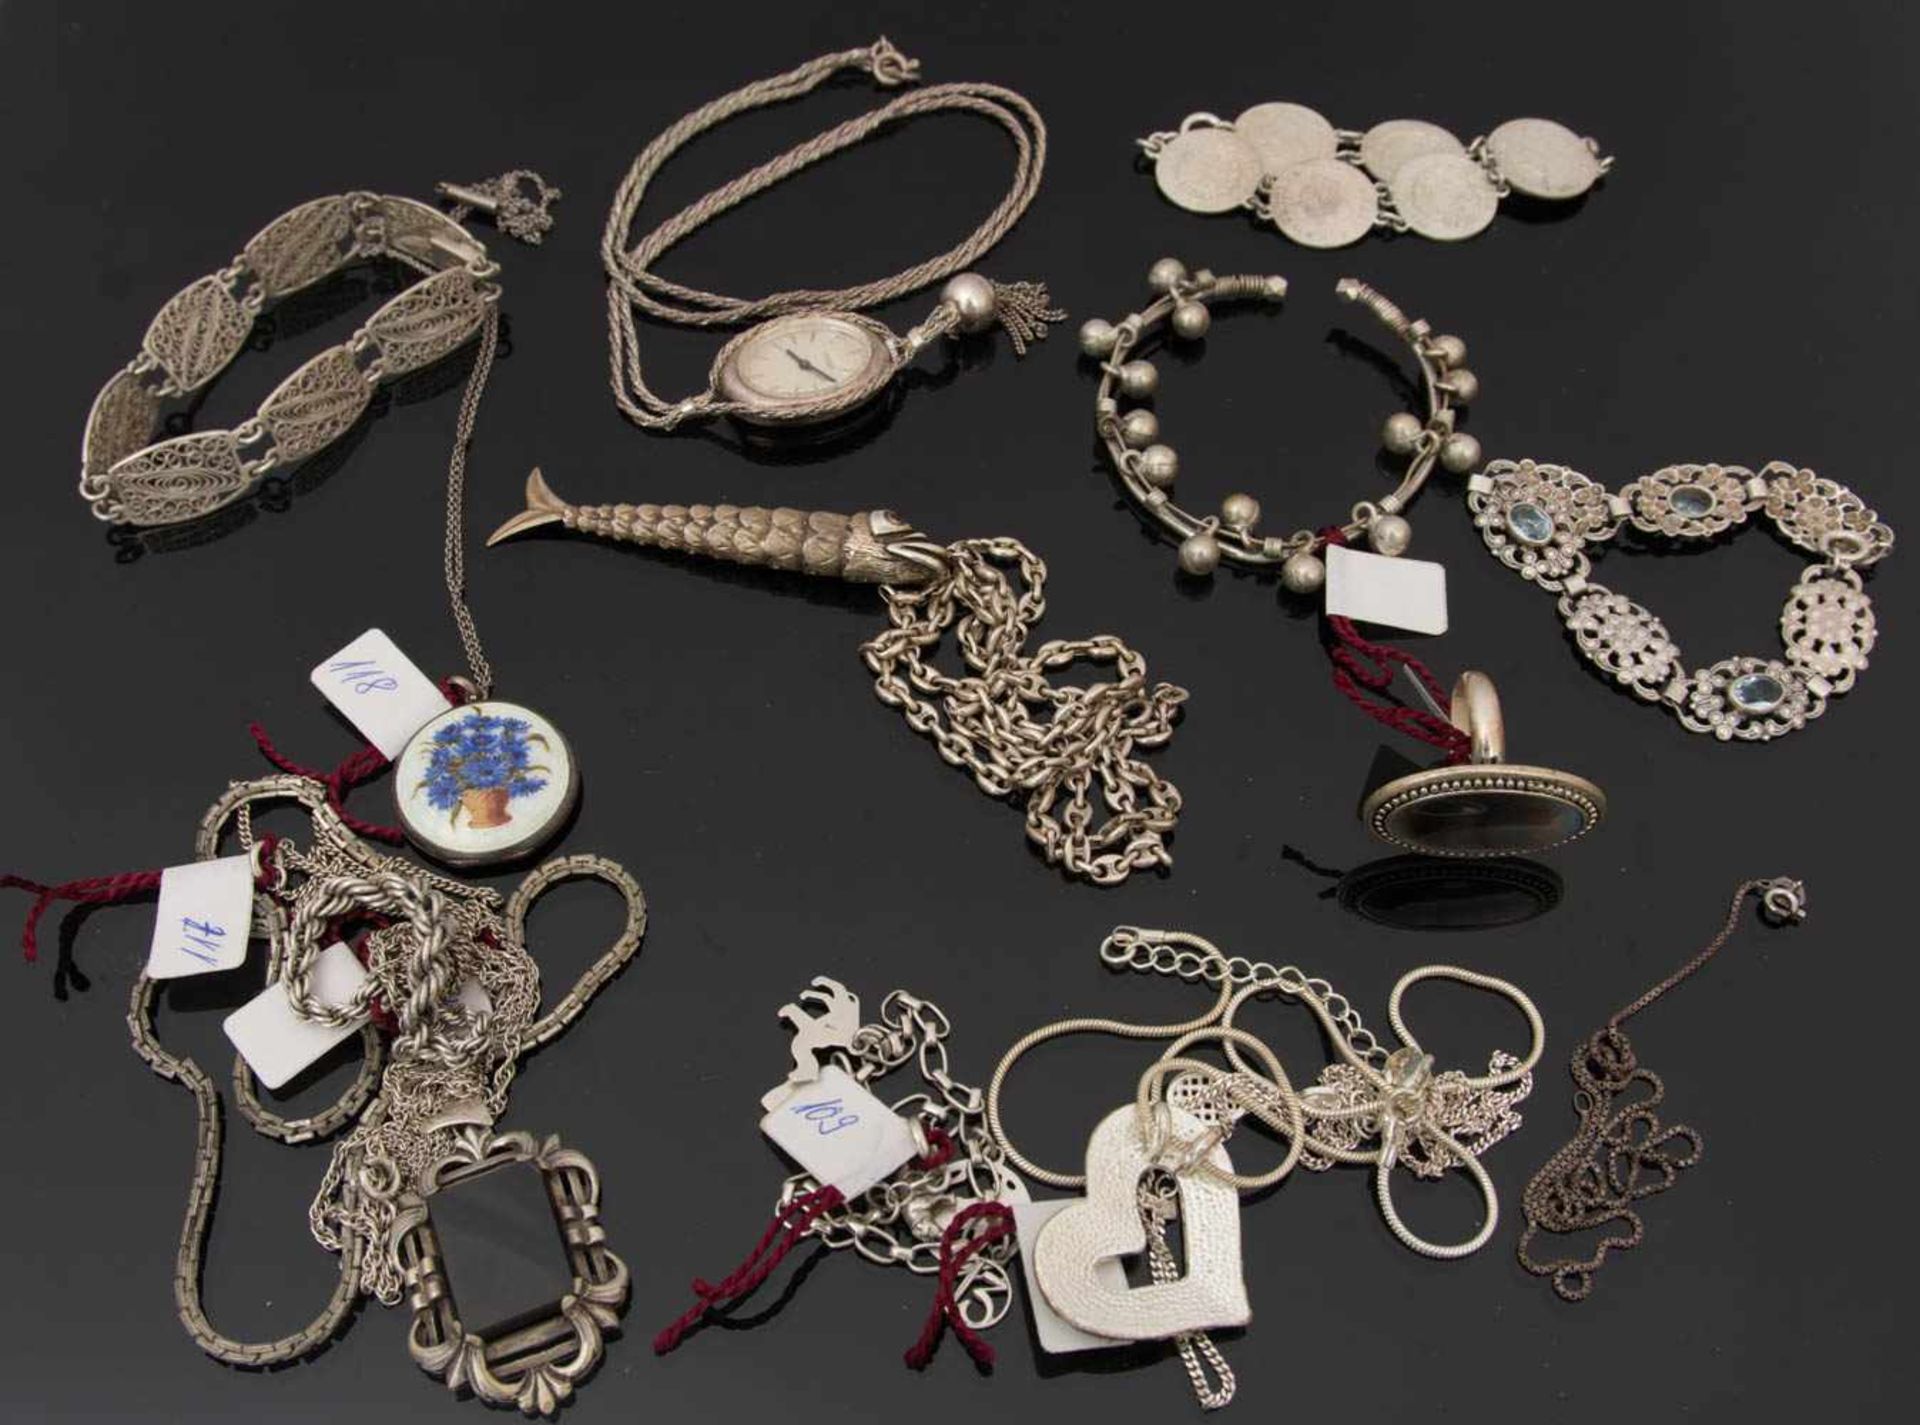 FEINES SILBERSCHMUCK KONVOLUT, Arm-und Halsketten,Colliers uvm.Konvolut bestehend aus diversen